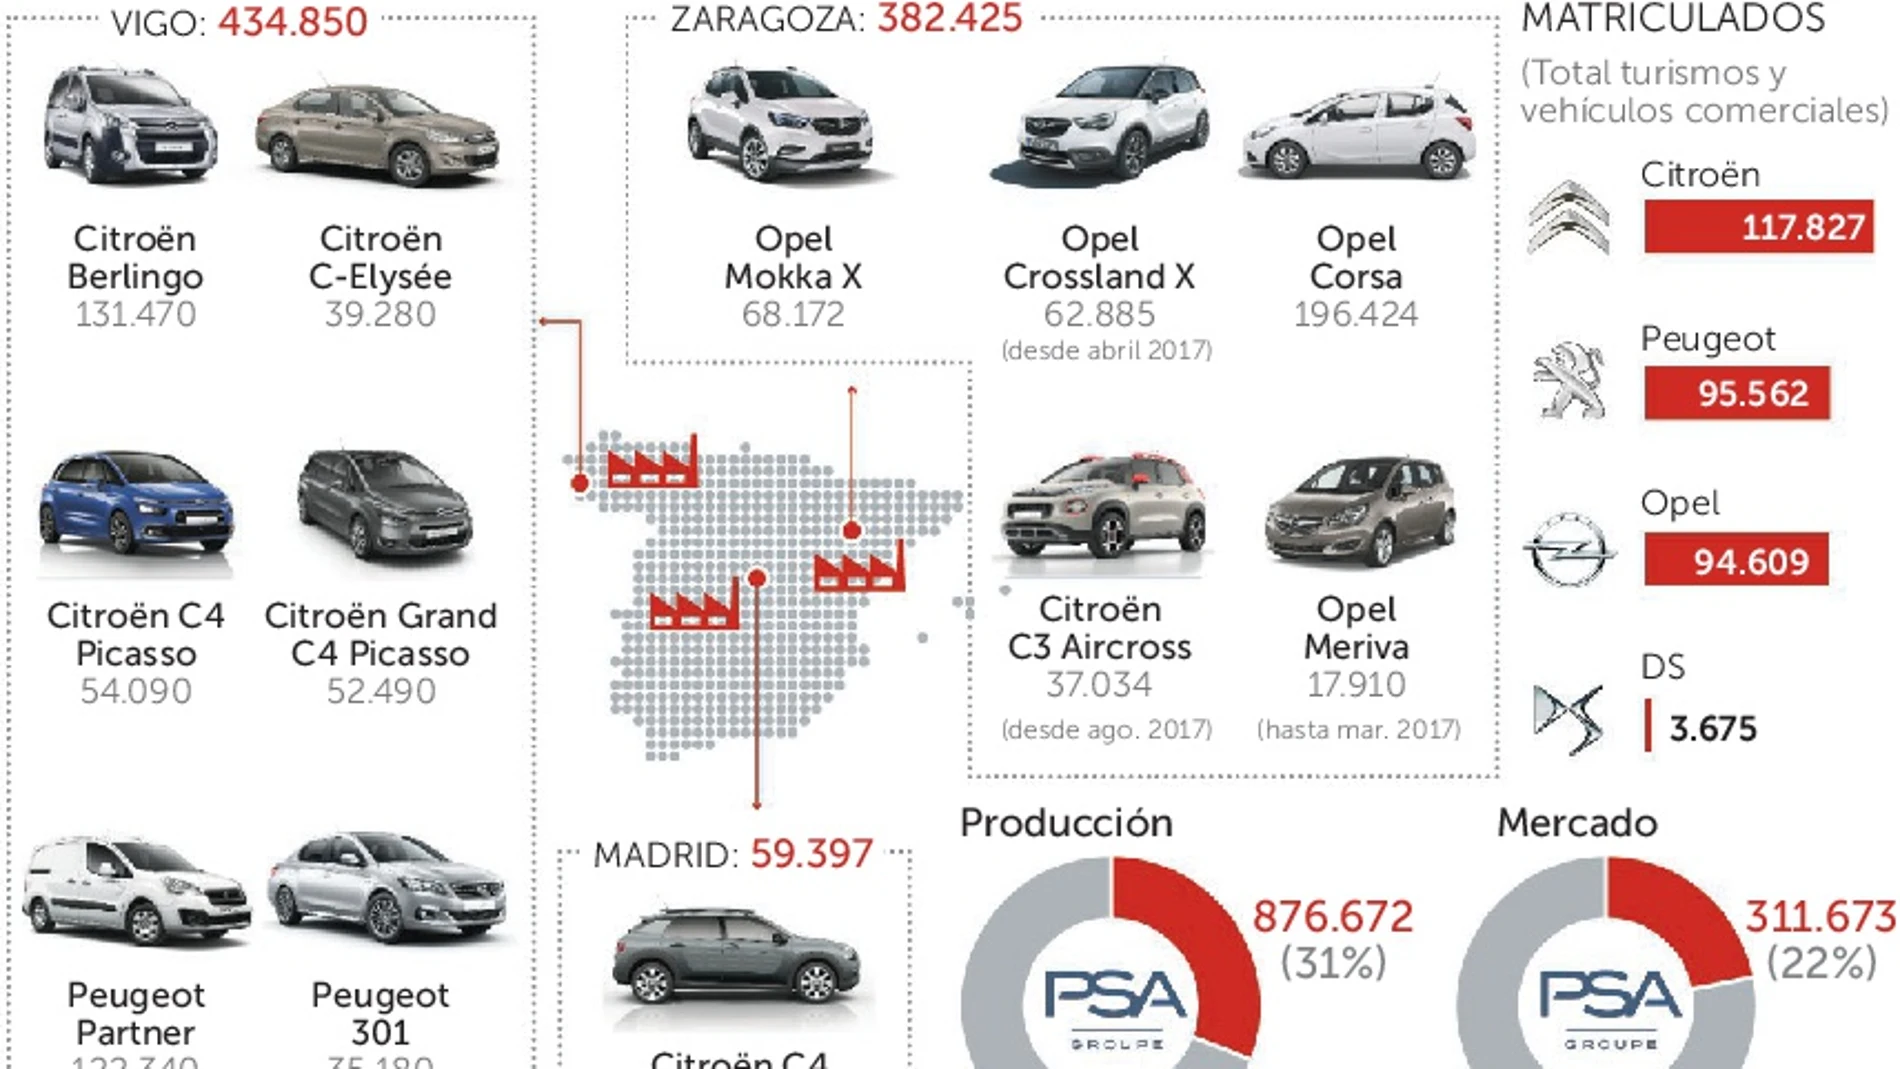 Opel: Sindicatos y dirección alcanzan un preacuerdo para salvar Figueruelas